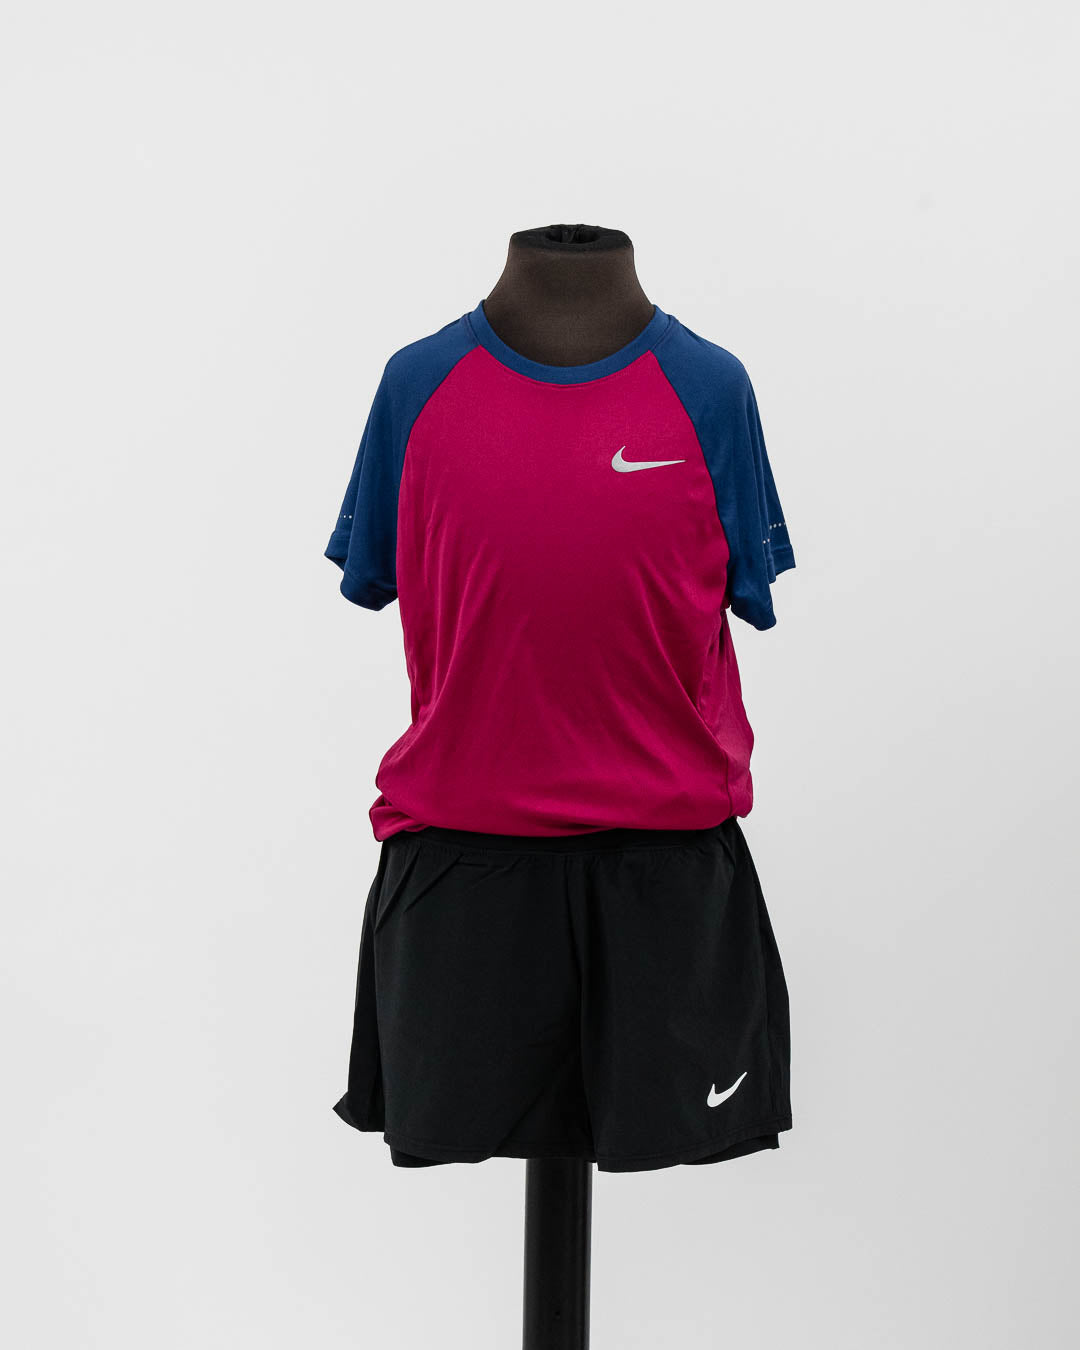 Nike Miler Crew Pige T-shirt Mørkerød/Blå